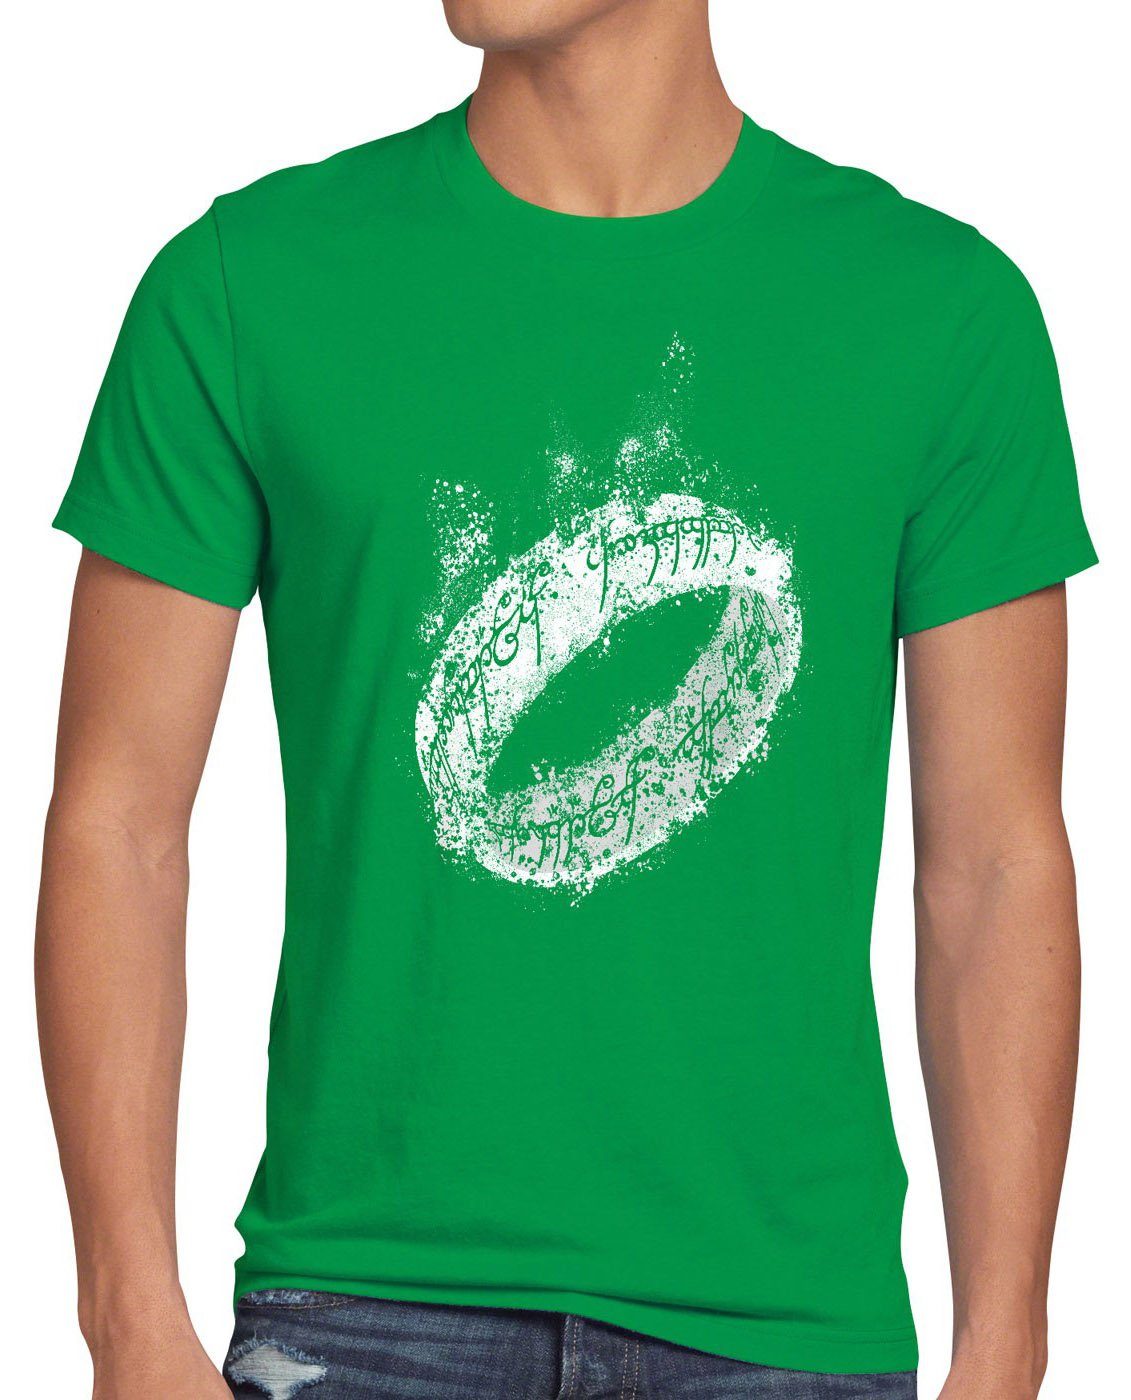 Herr ringe Triologie grün Eine Auenland frodo Herren T-Shirt Neuseeland Lord Der Print-Shirt Ring style3